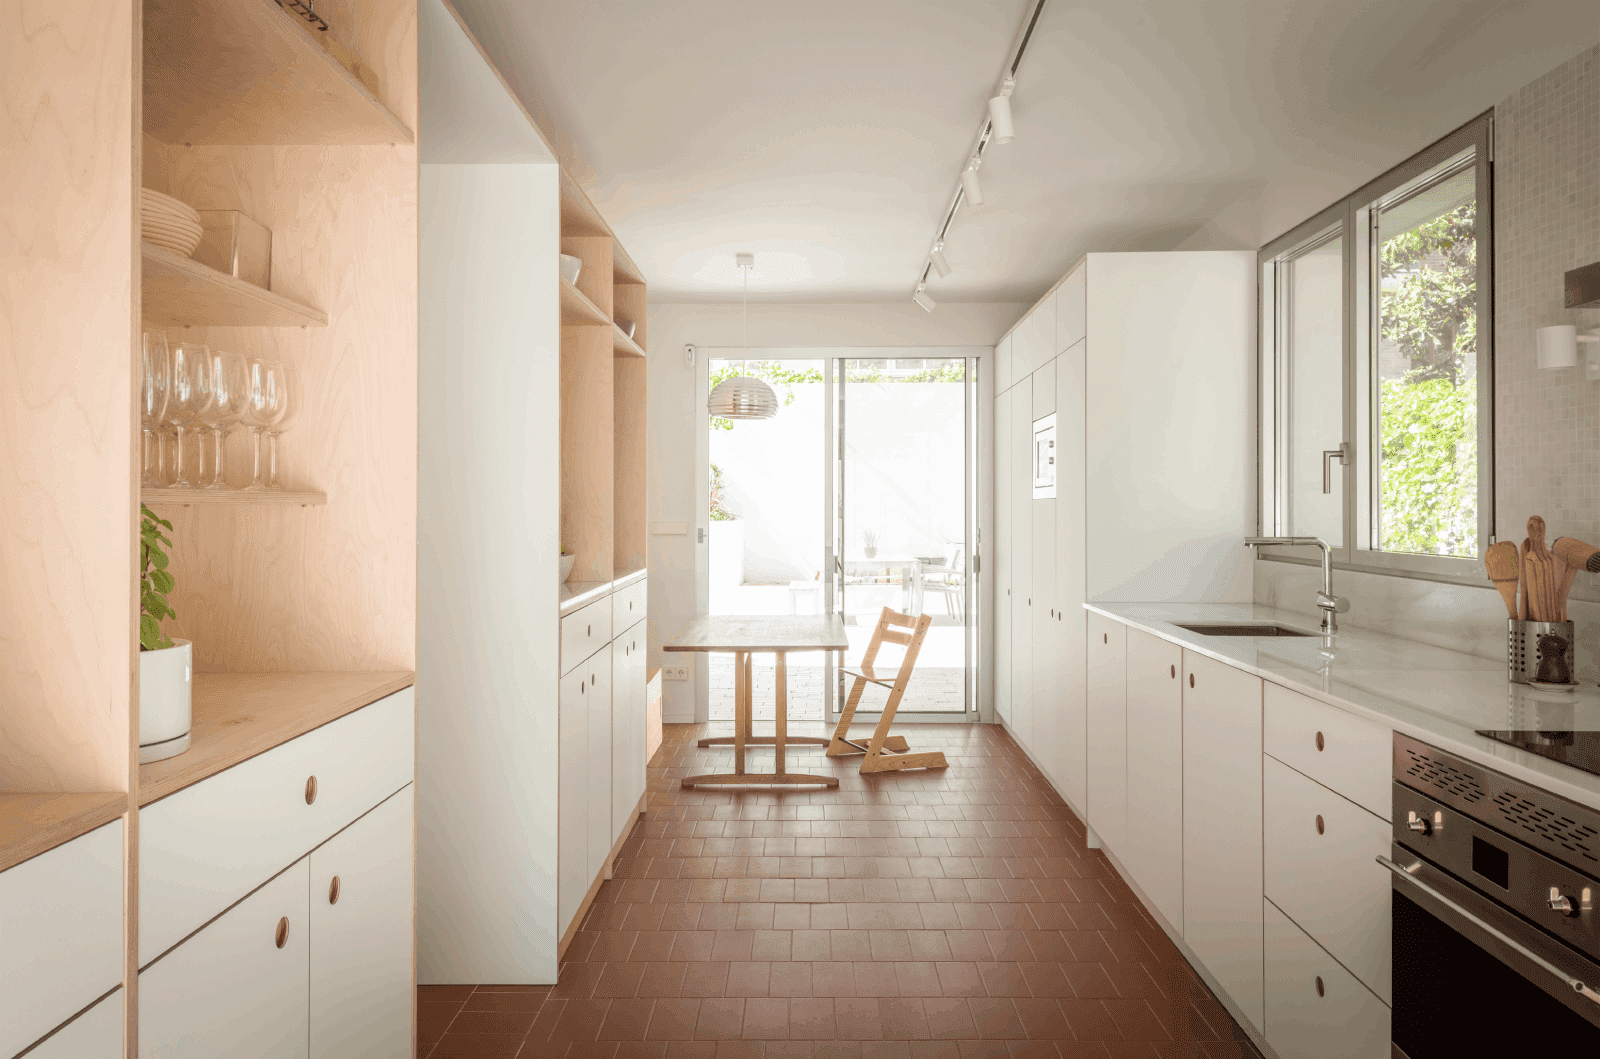 Cocina blanca con suelo acabados en cerámica rojiza y muebles de madera